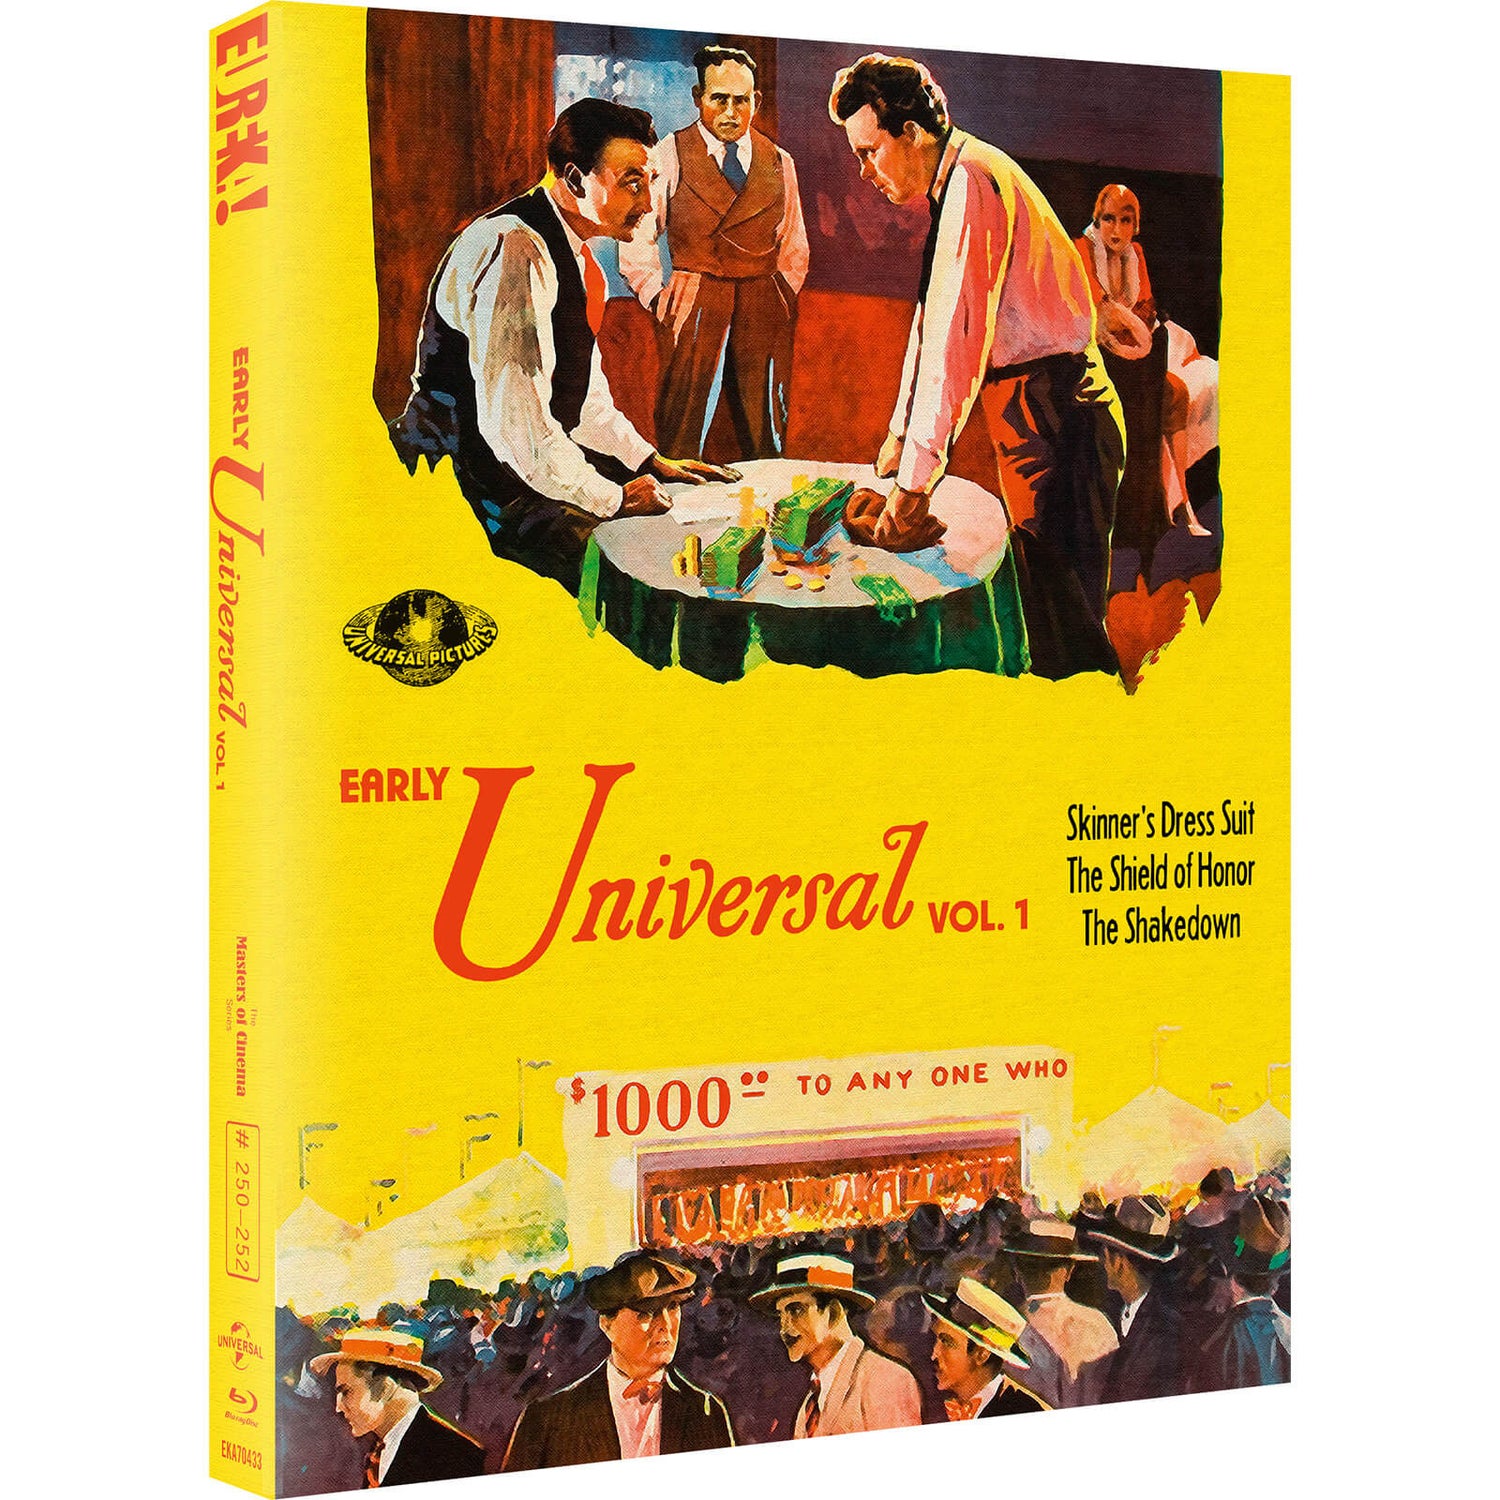 Frühe Universal Volume 1 (Masters of Cinema)